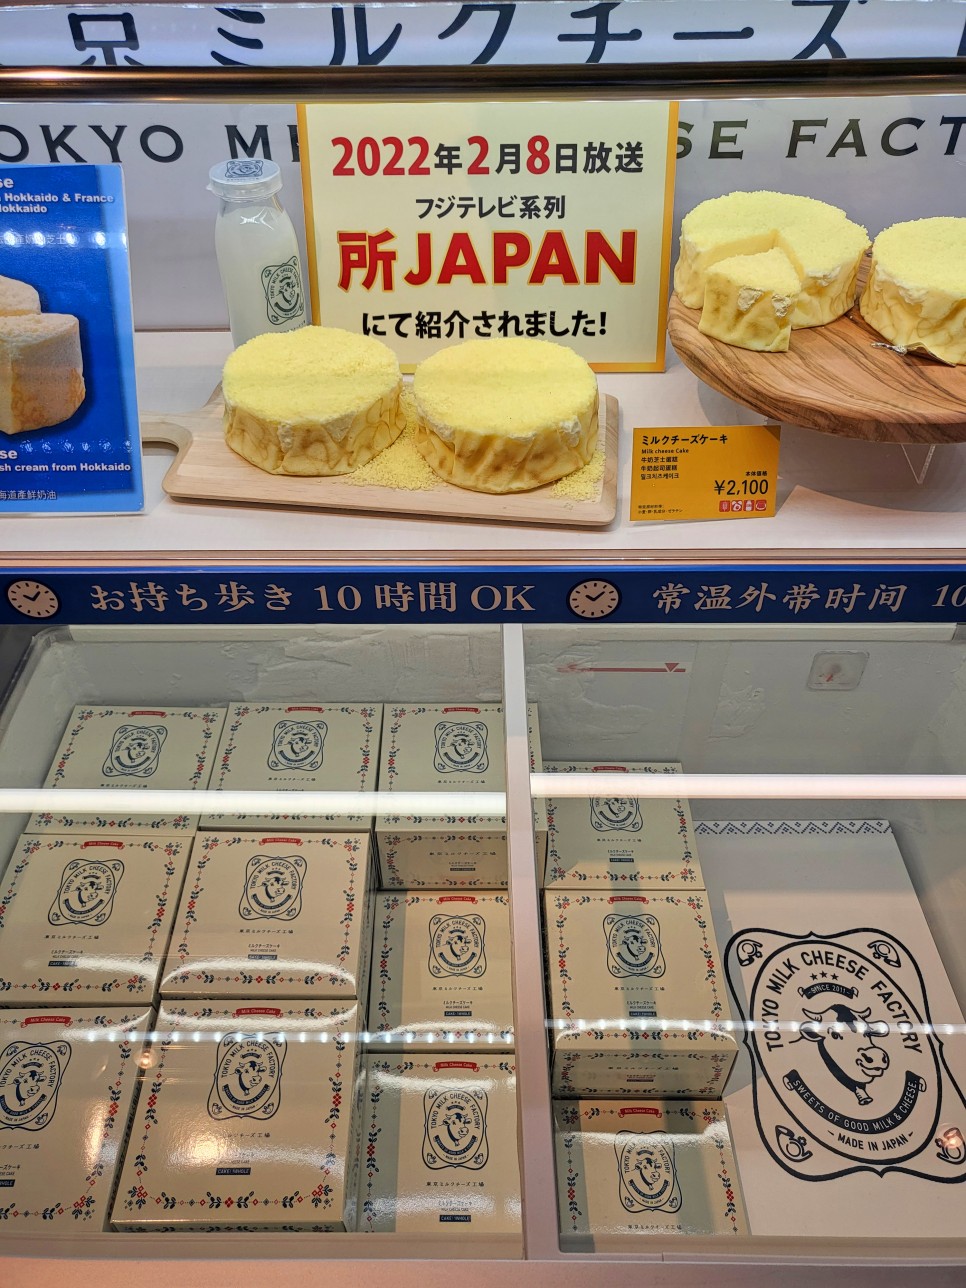 도쿄 쇼핑리스트 일본 면세점 간식 추천 5가지 먹어본 후기